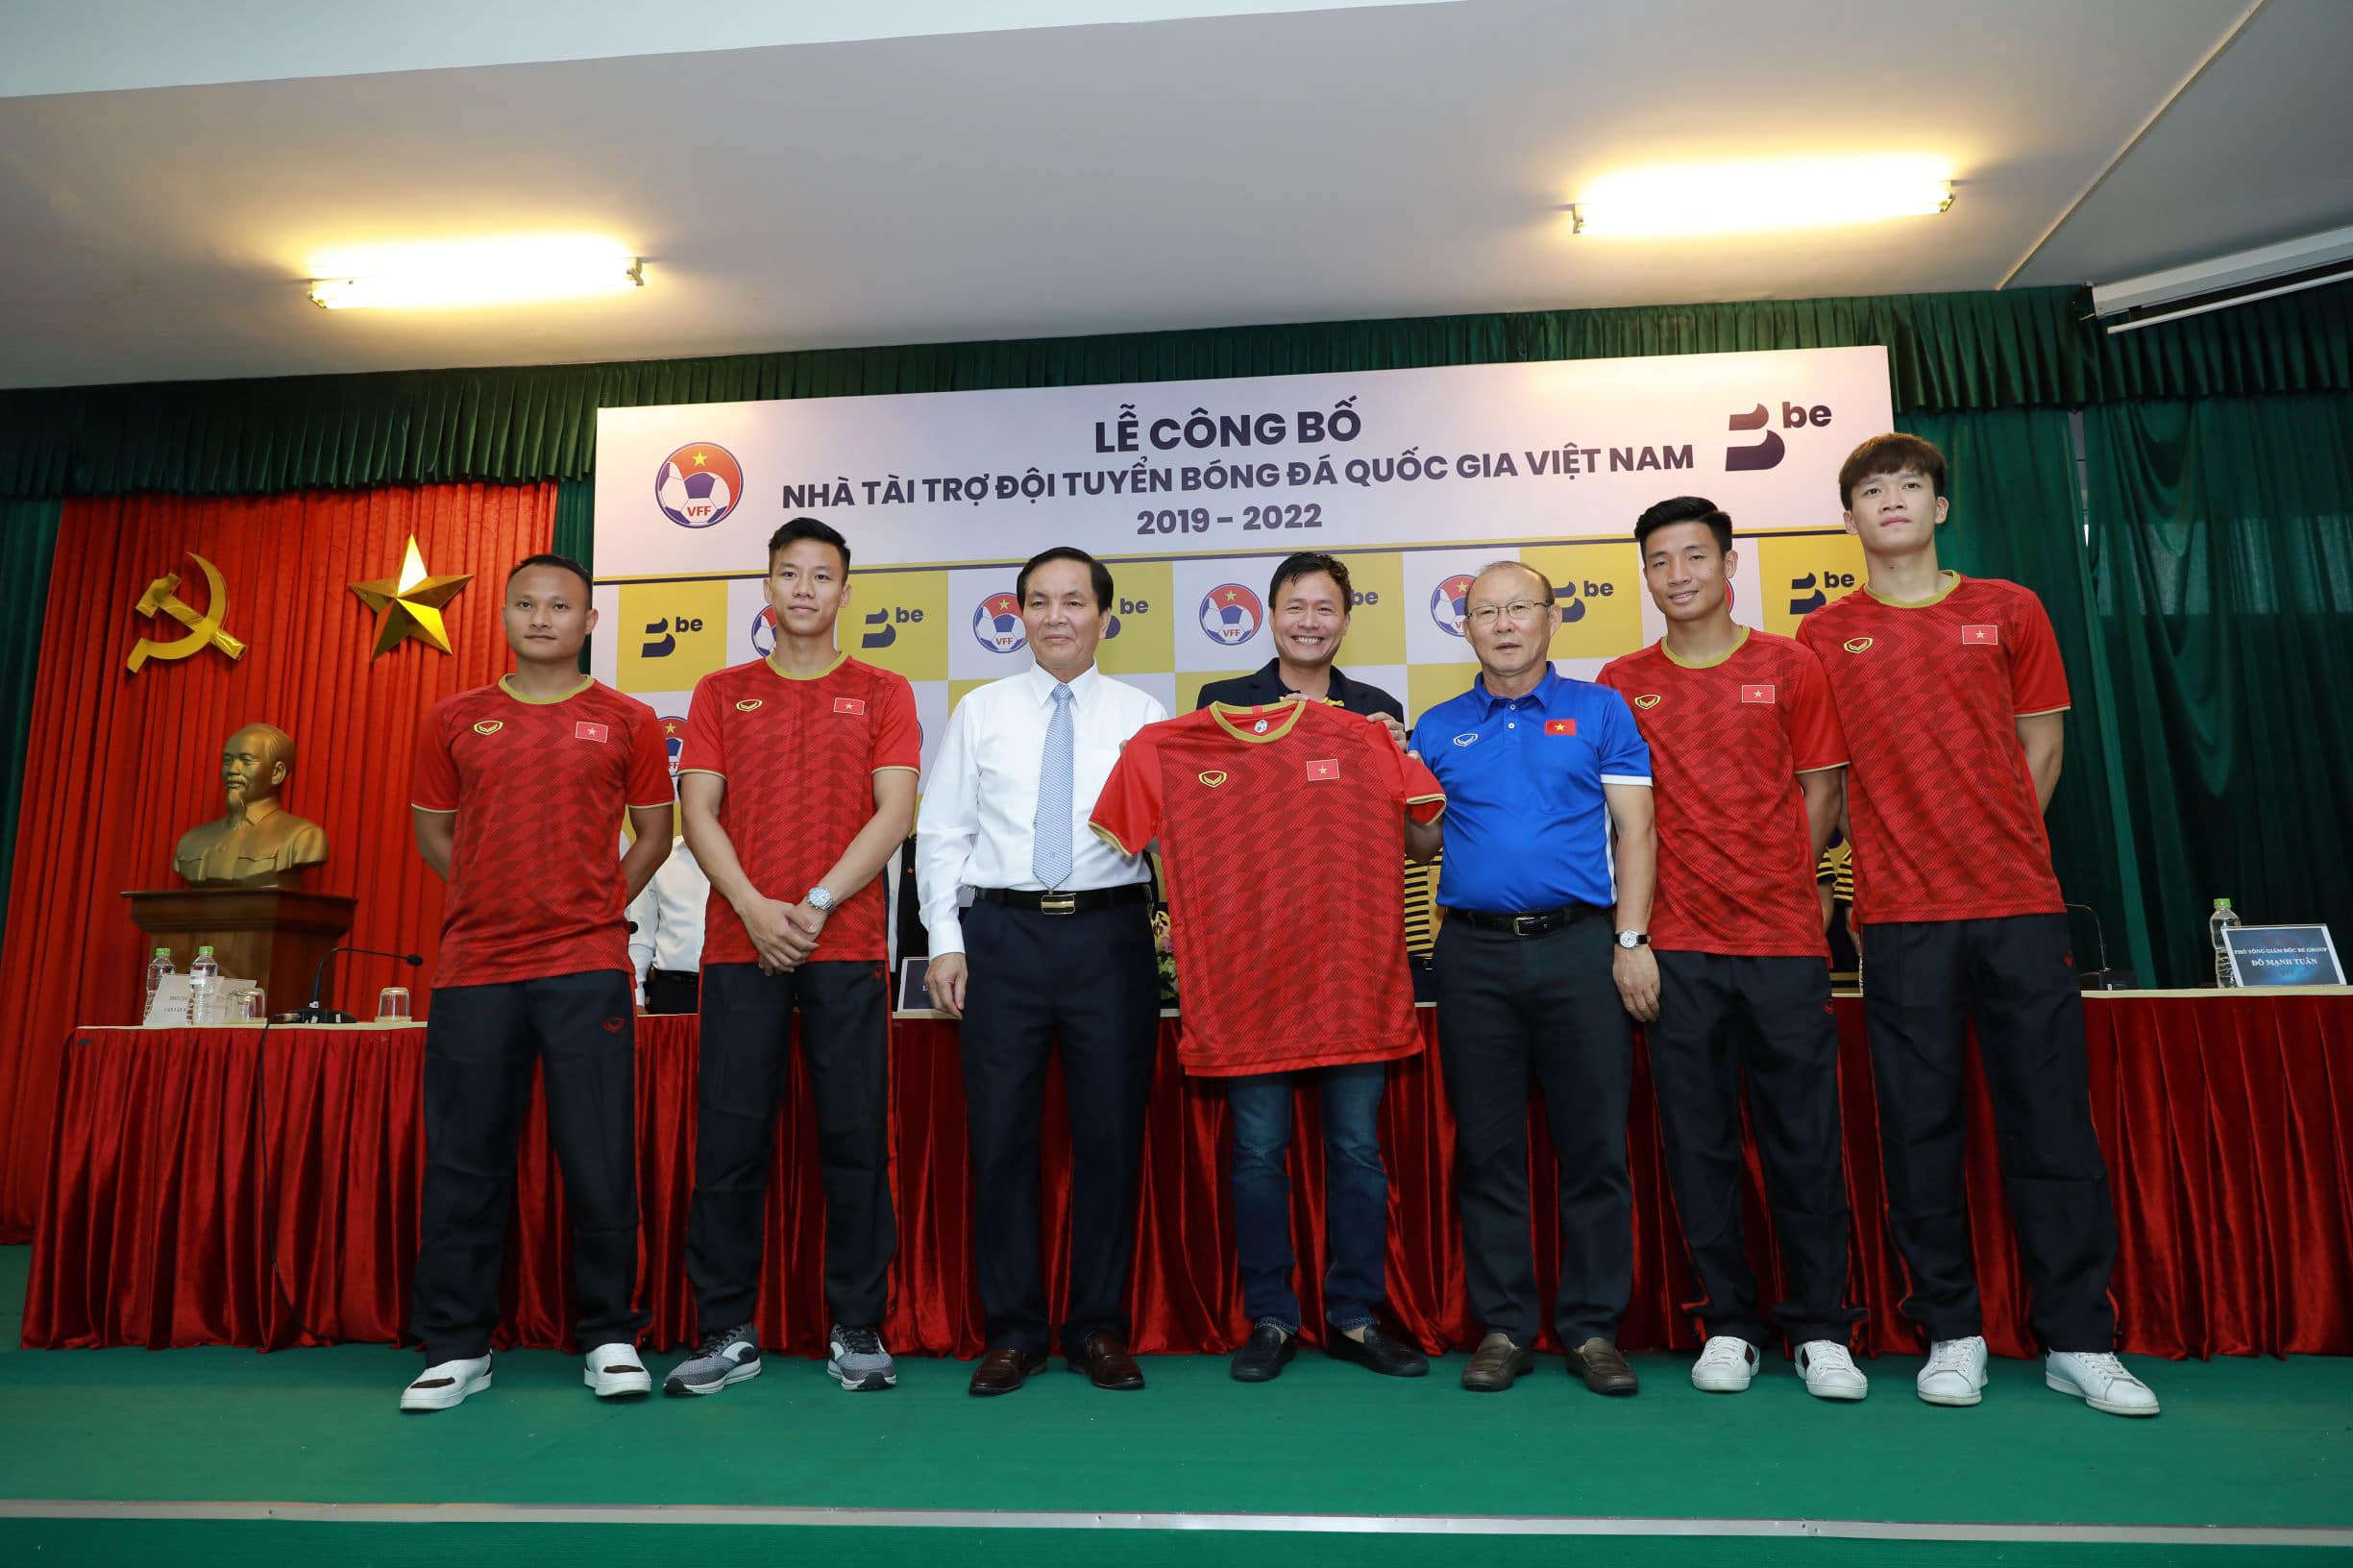 BE GROUP là nhà tài trợ đội tuyển bóng đá Quốc gia Việt Nam